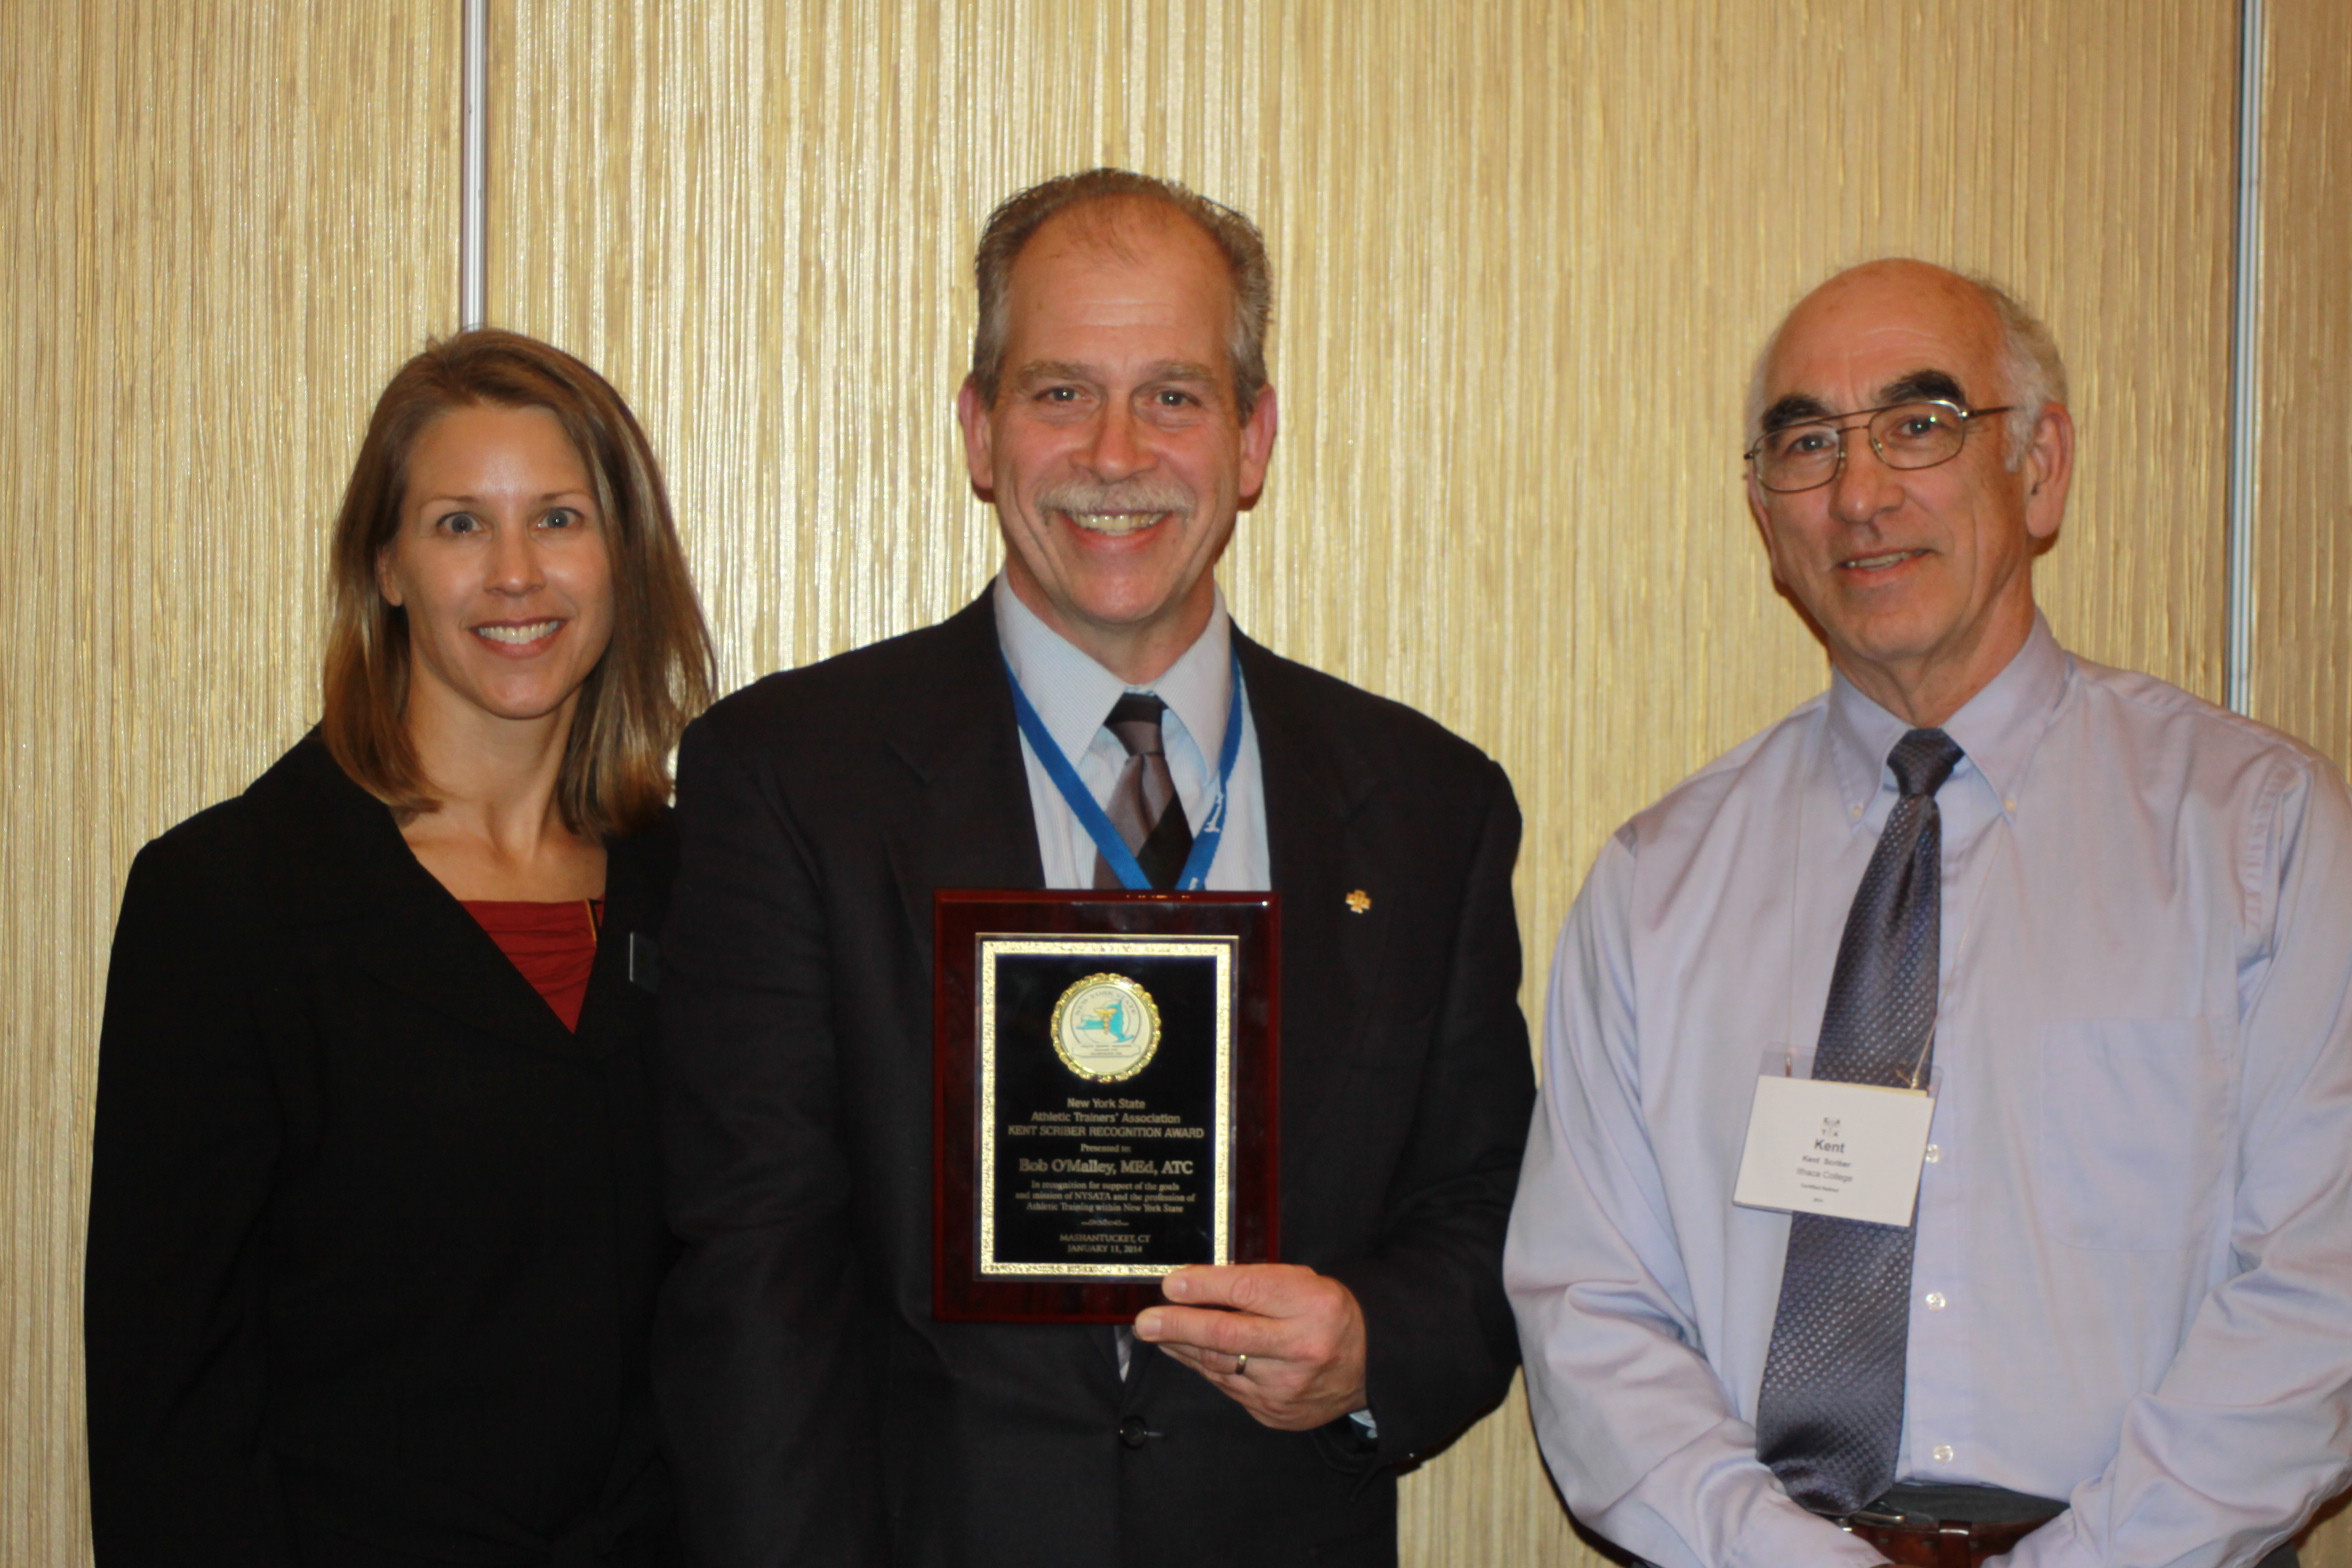 Bob O'Malley, MS, ATC, CES (center) received NYSATA's 2014 Kent Scriber Recognition Award.